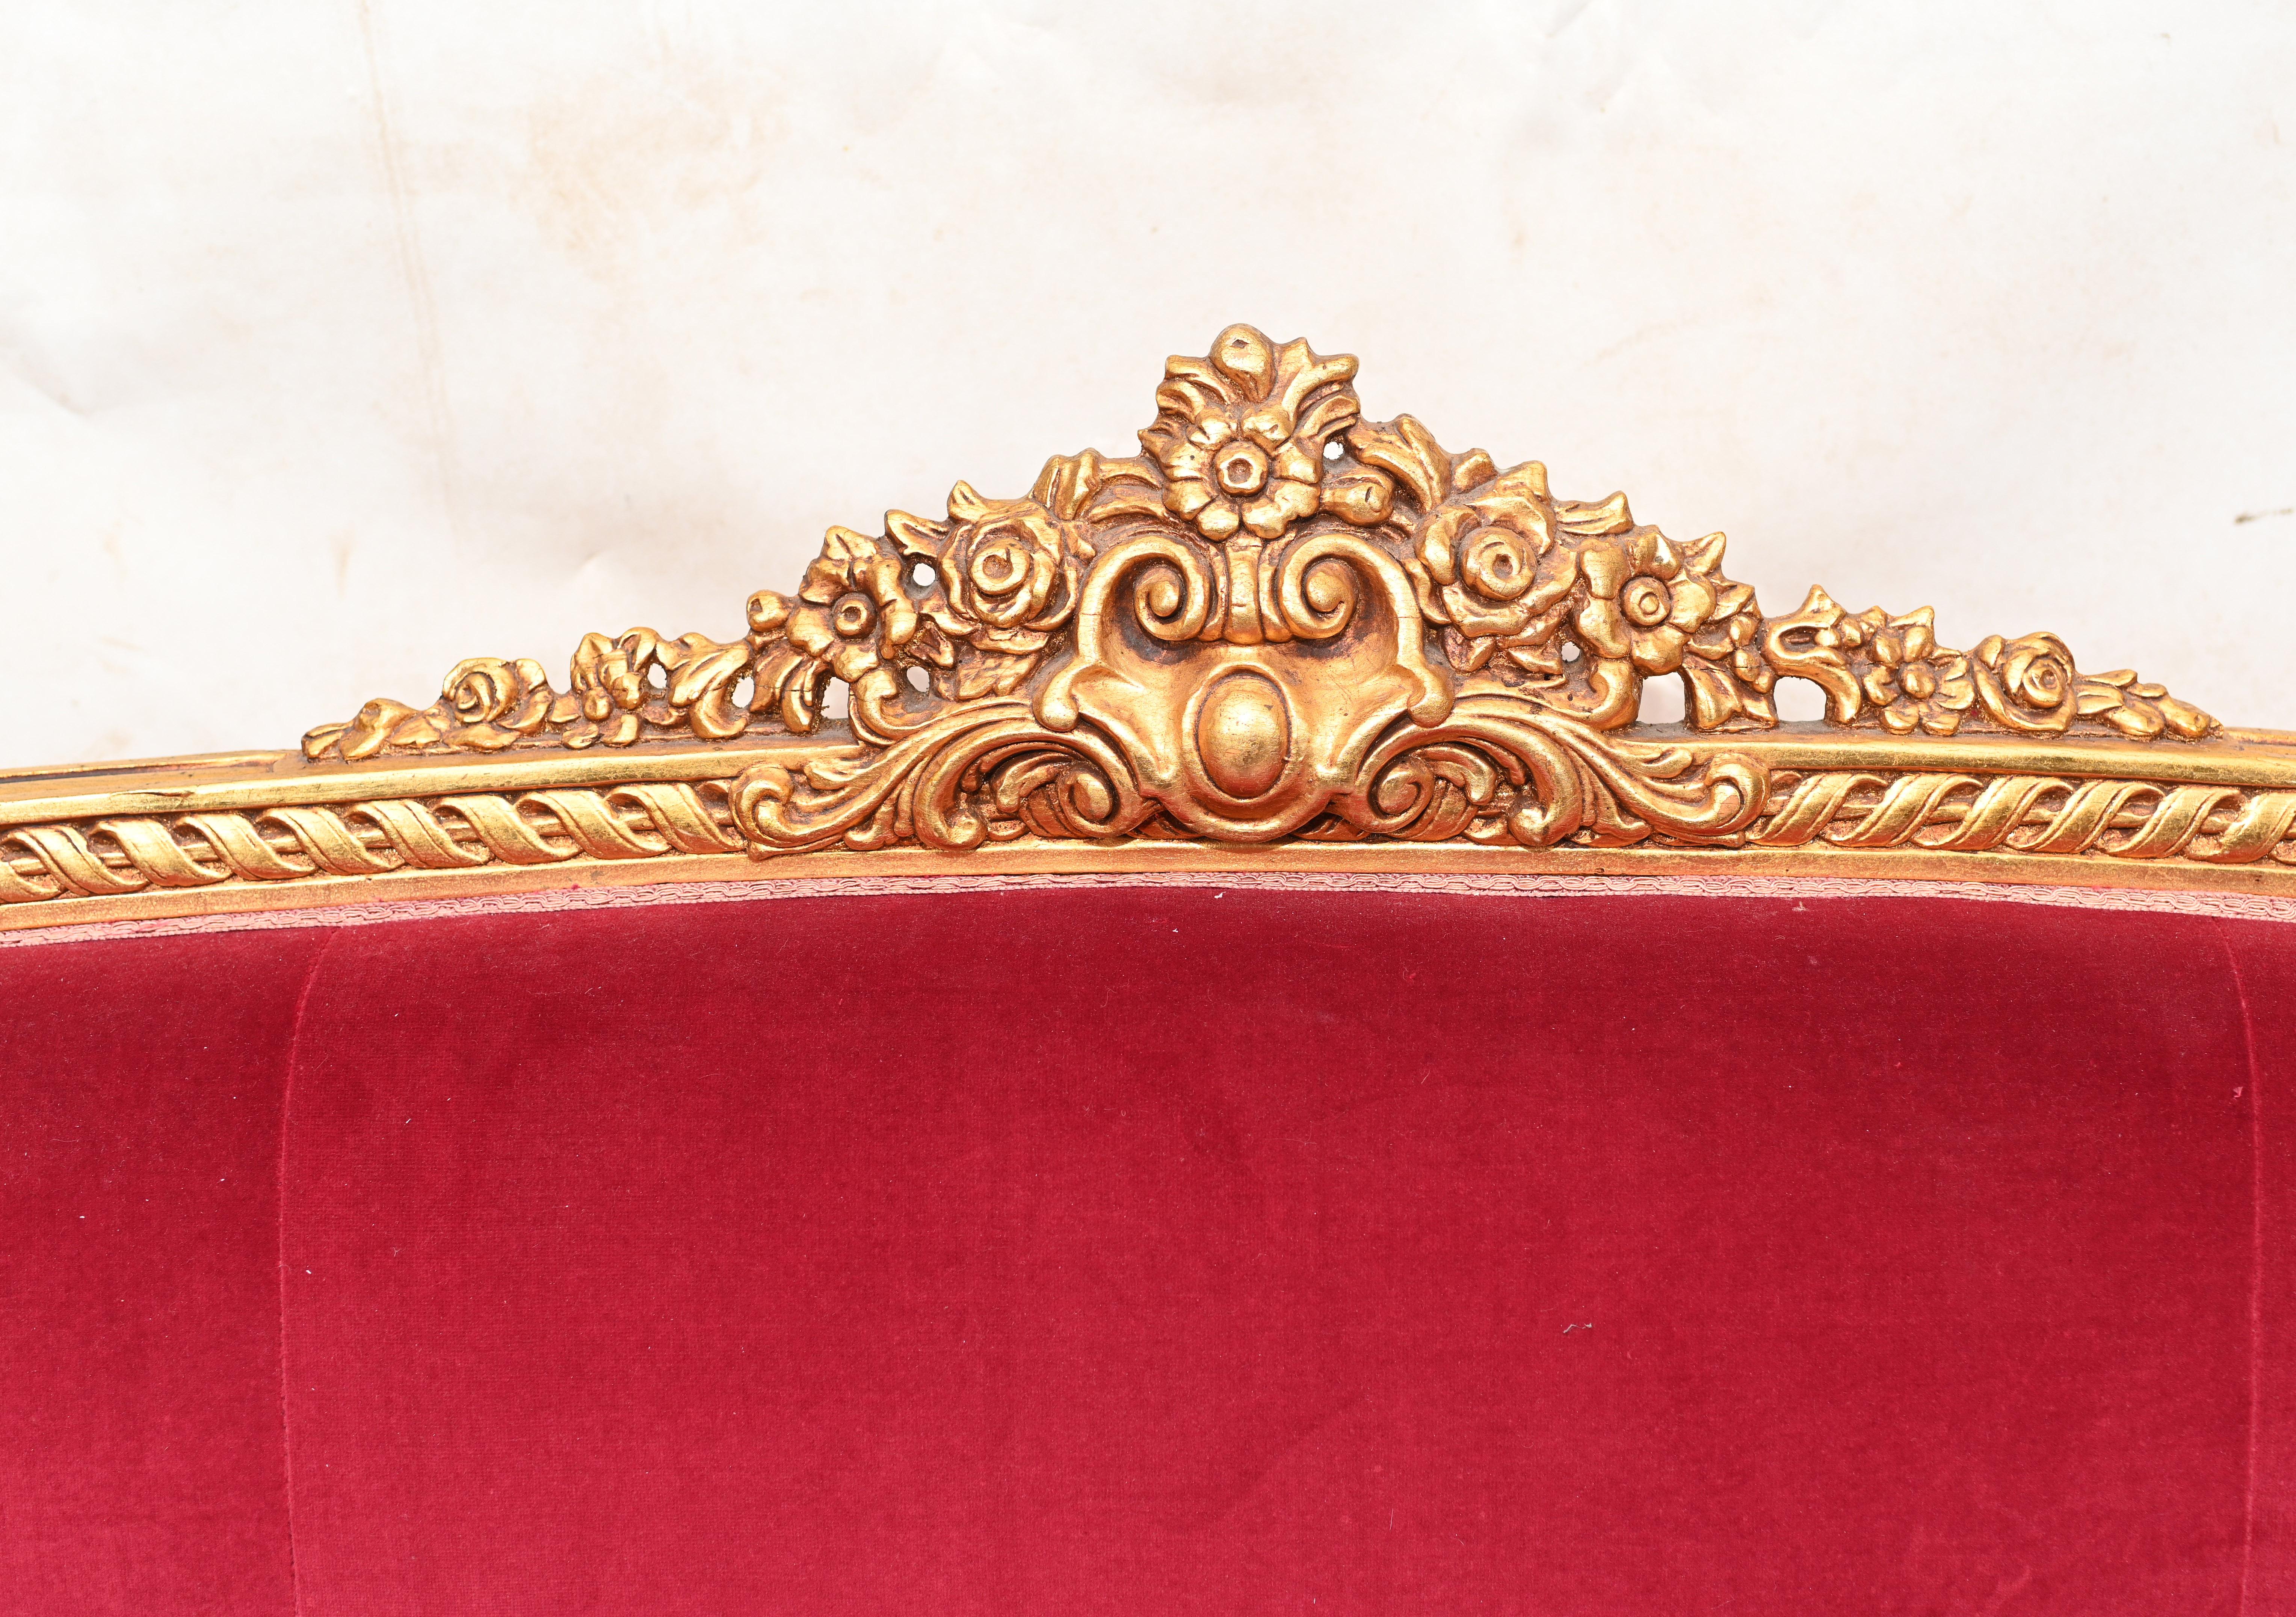 Magnifique canapé ou sofa en bois doré de style Empire français
Cadre sculpté de façon complexe et doré.
Les détails élégants comprennent des rosettes et des arabesques.
Elle date des années 1930 environ.
Une belle pièce d'intérieur
Acheté à un